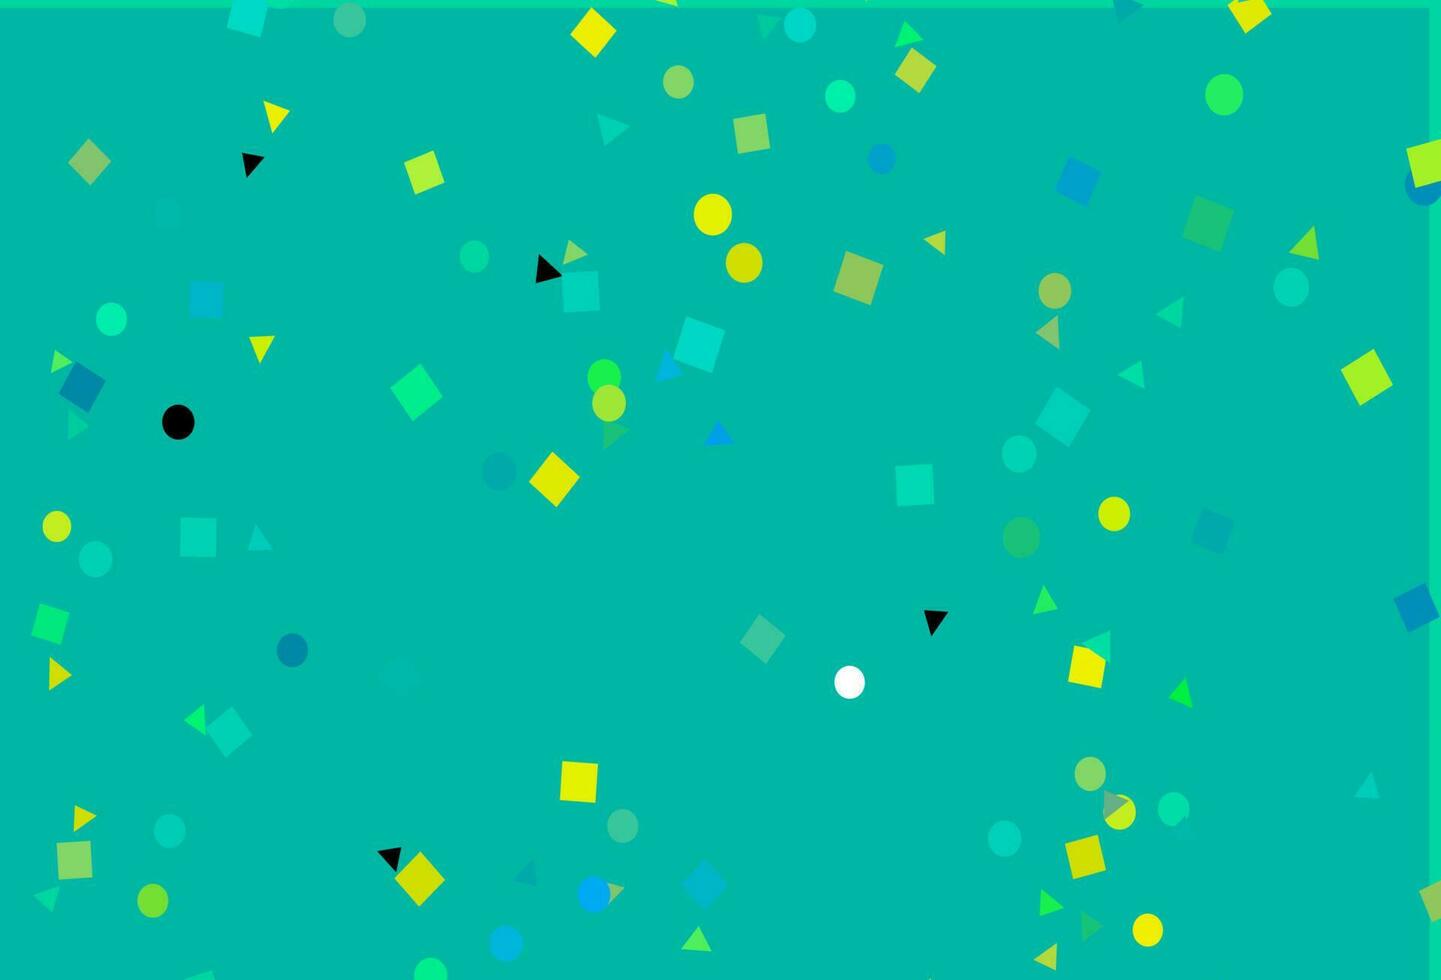 plantilla de vector azul claro, amarillo con cristales, círculos, cuadrados.